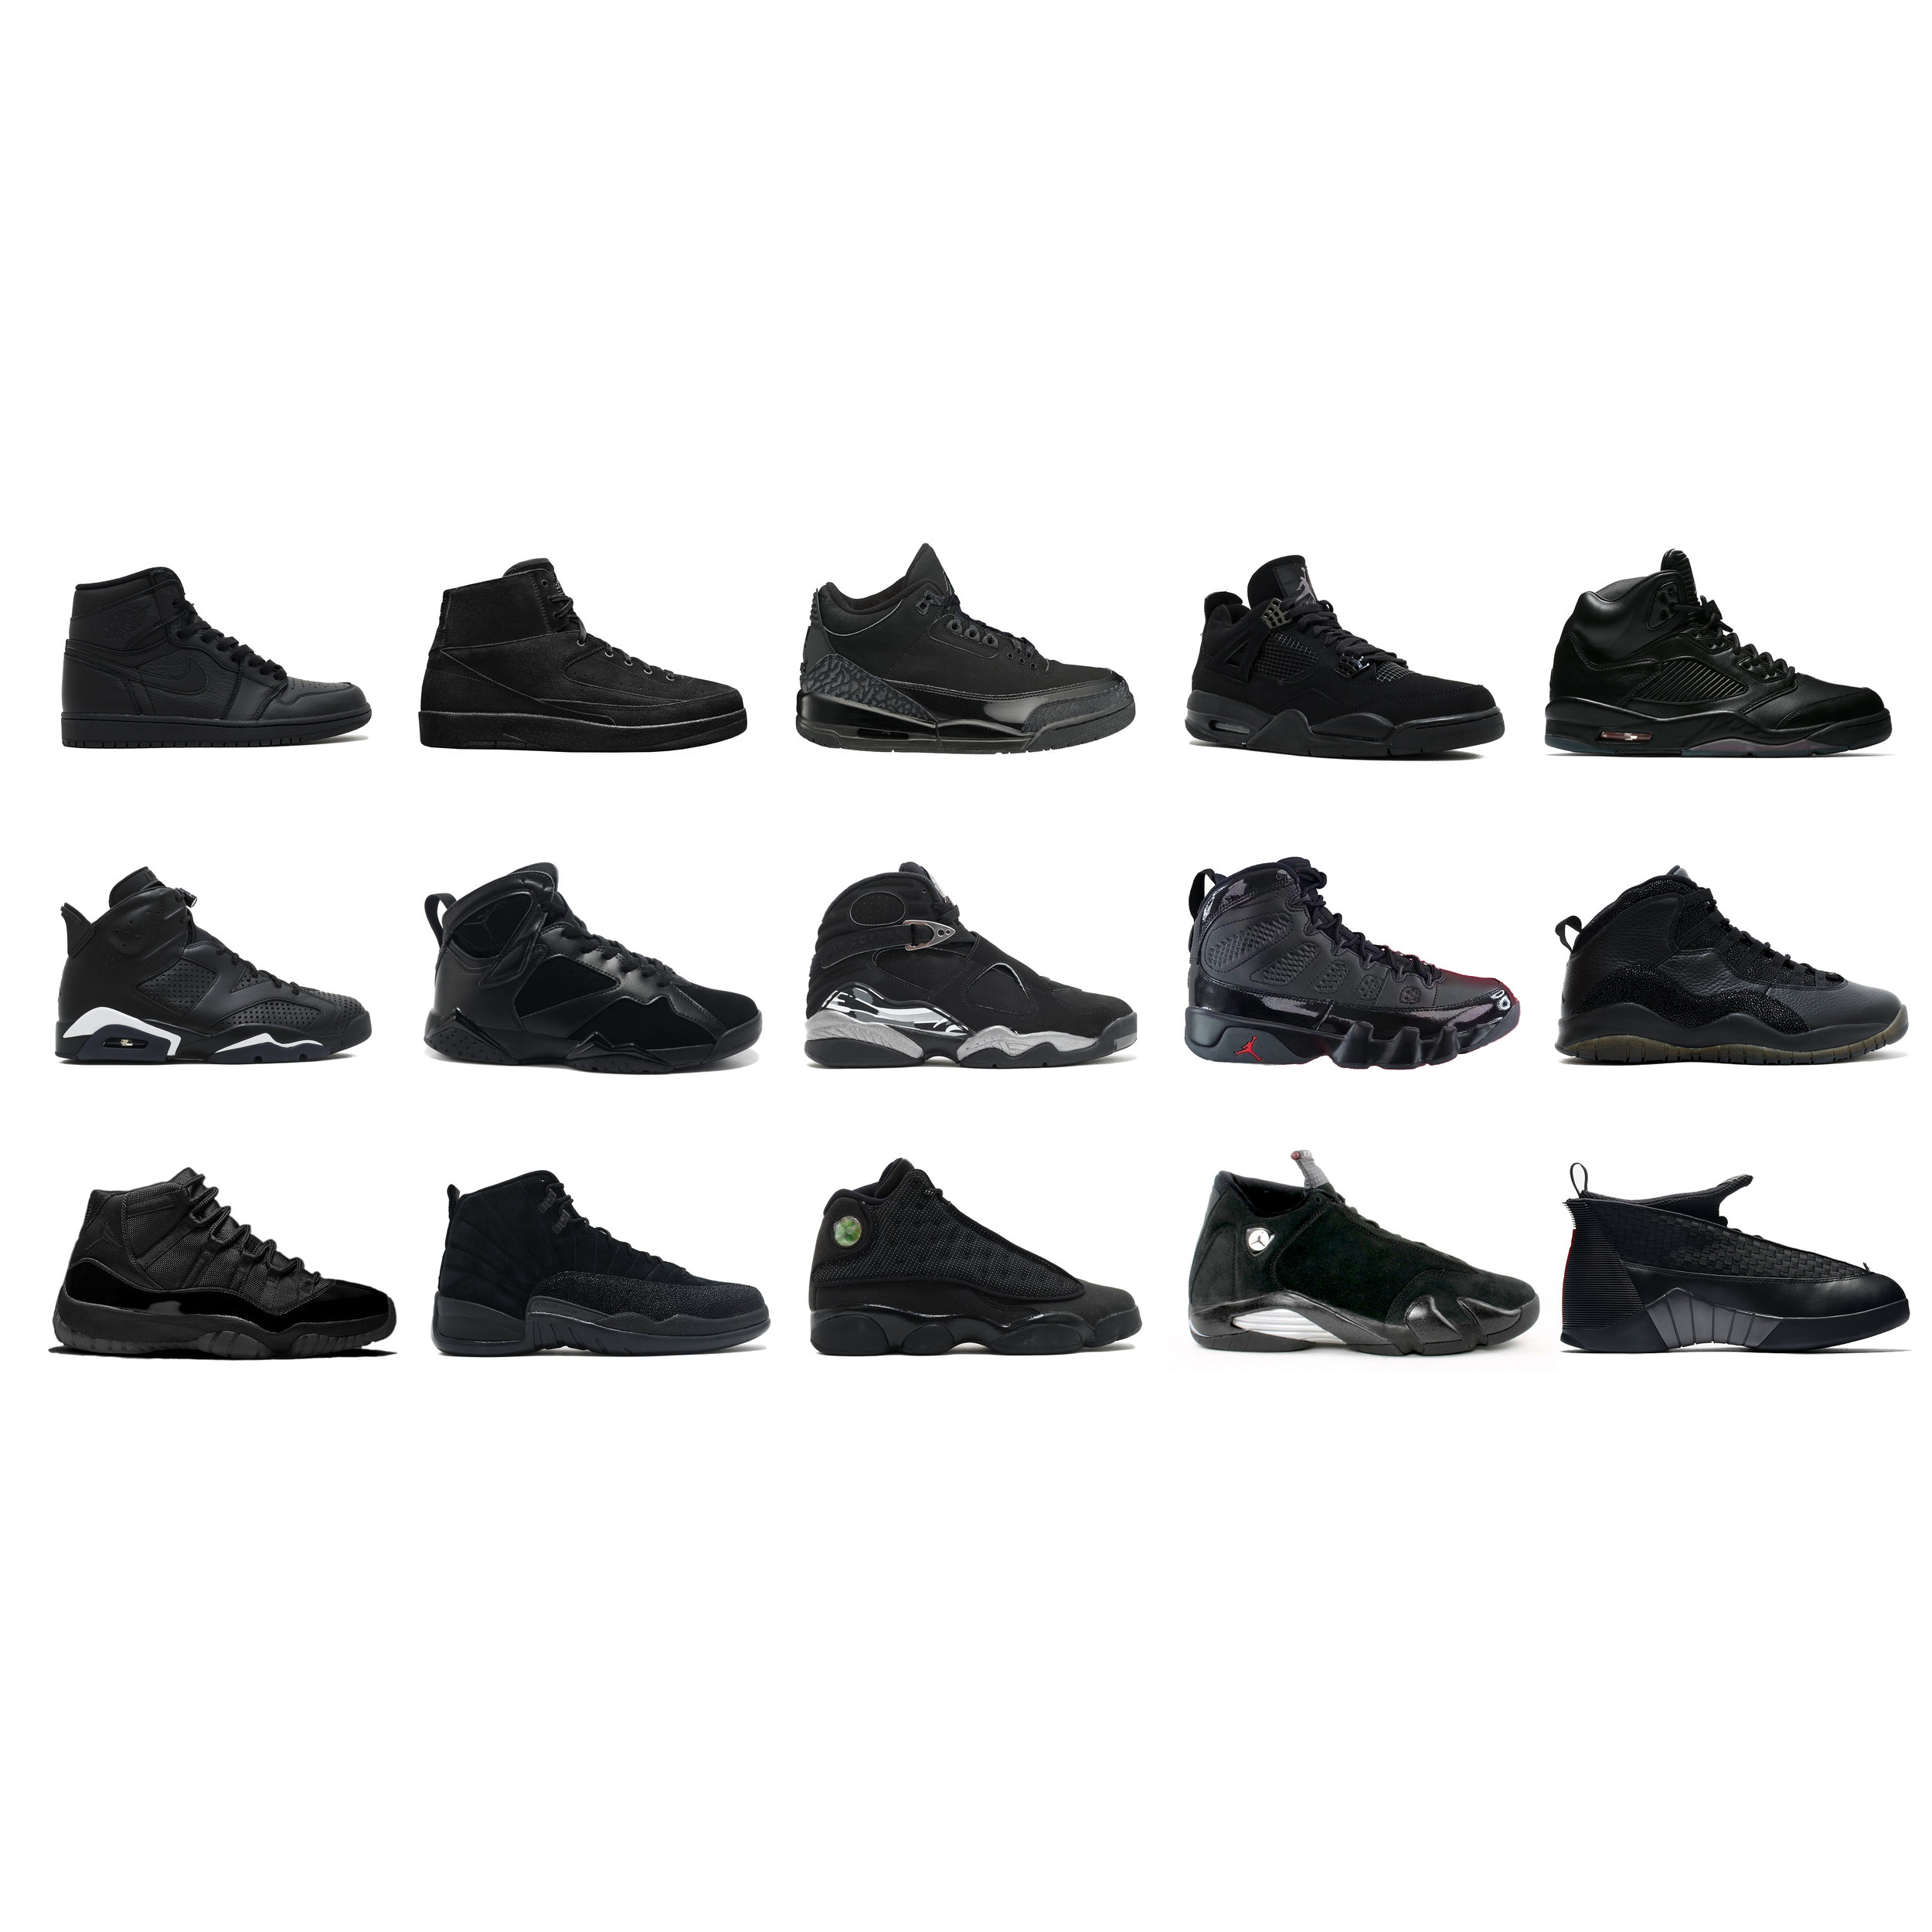 Jordans I-XV - Black All Black | All 